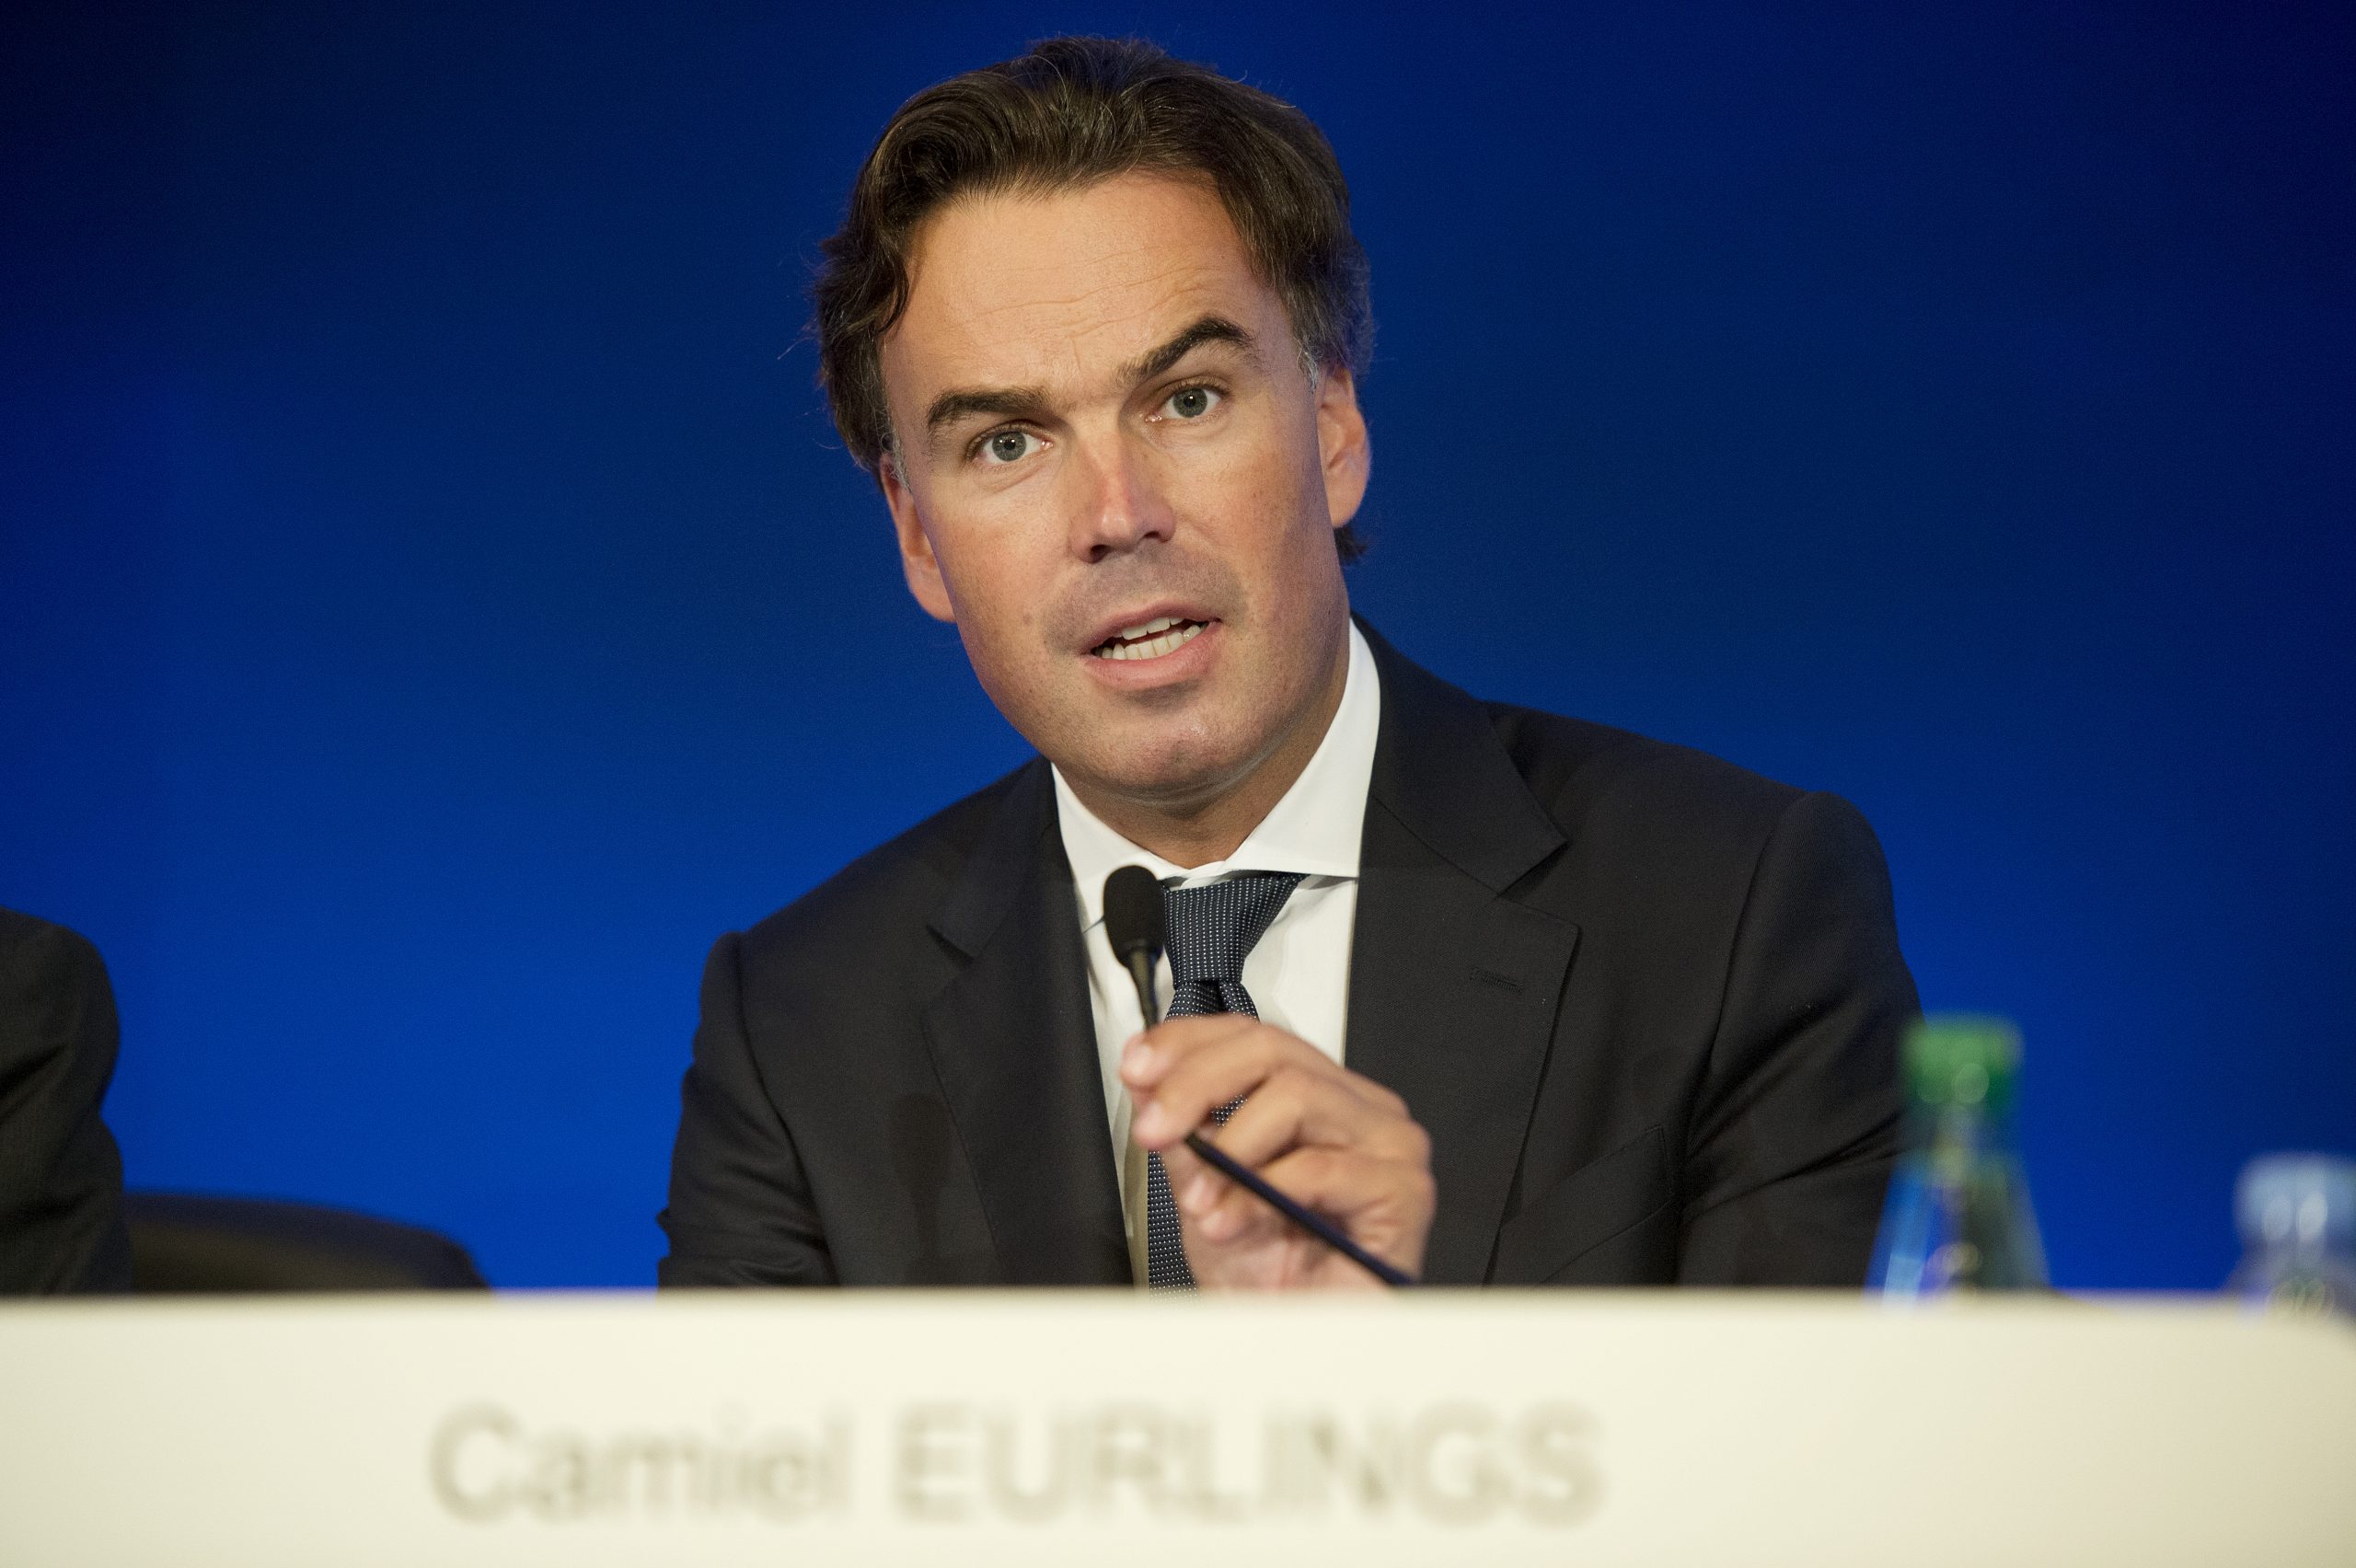 Camiel Eurlings in 2014 als president-directeur van KLM.